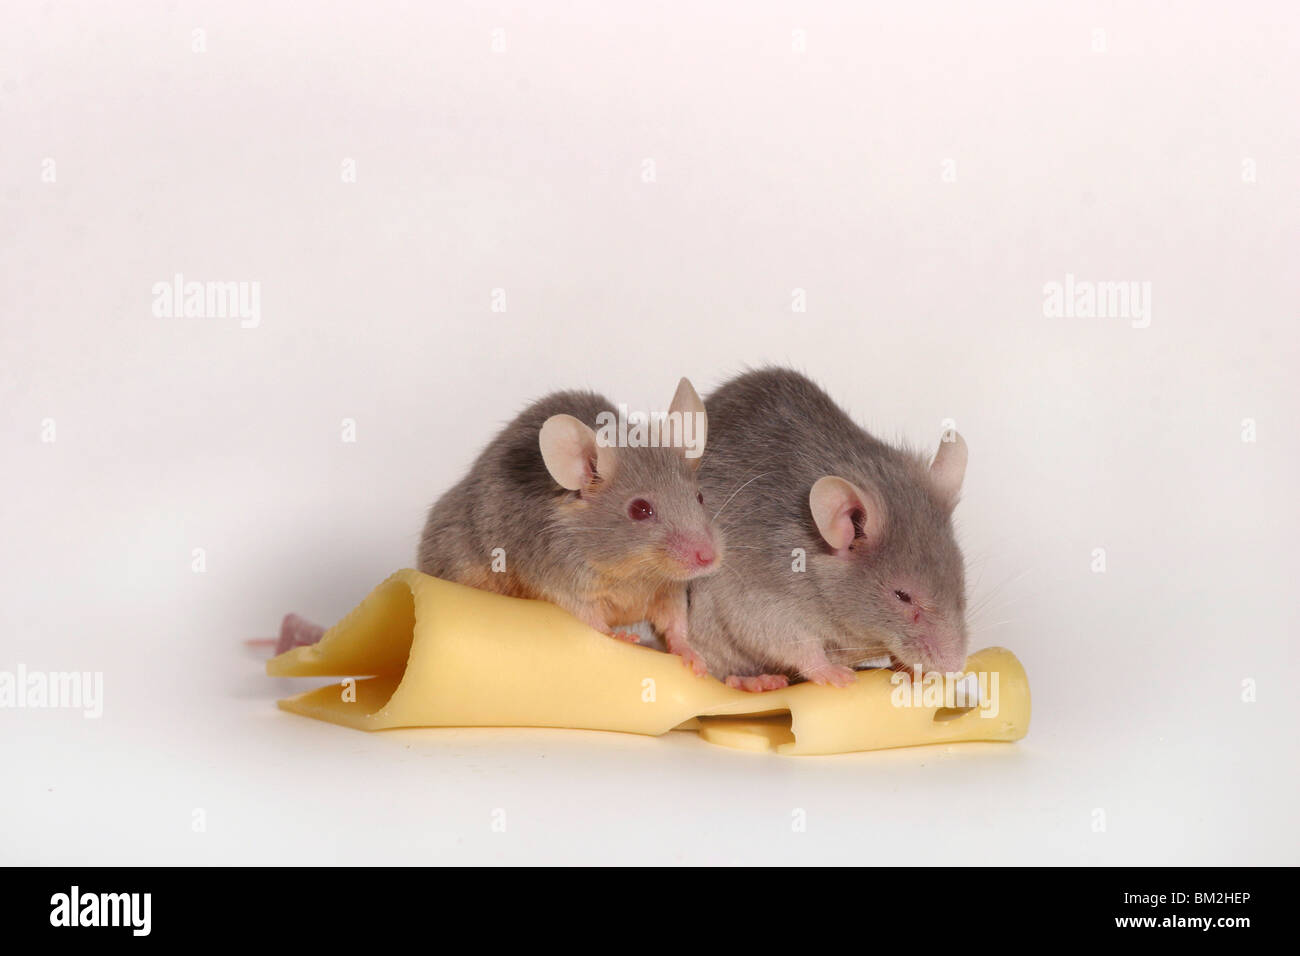 Mäuse mit Käse / mice with cheese Stock Photo